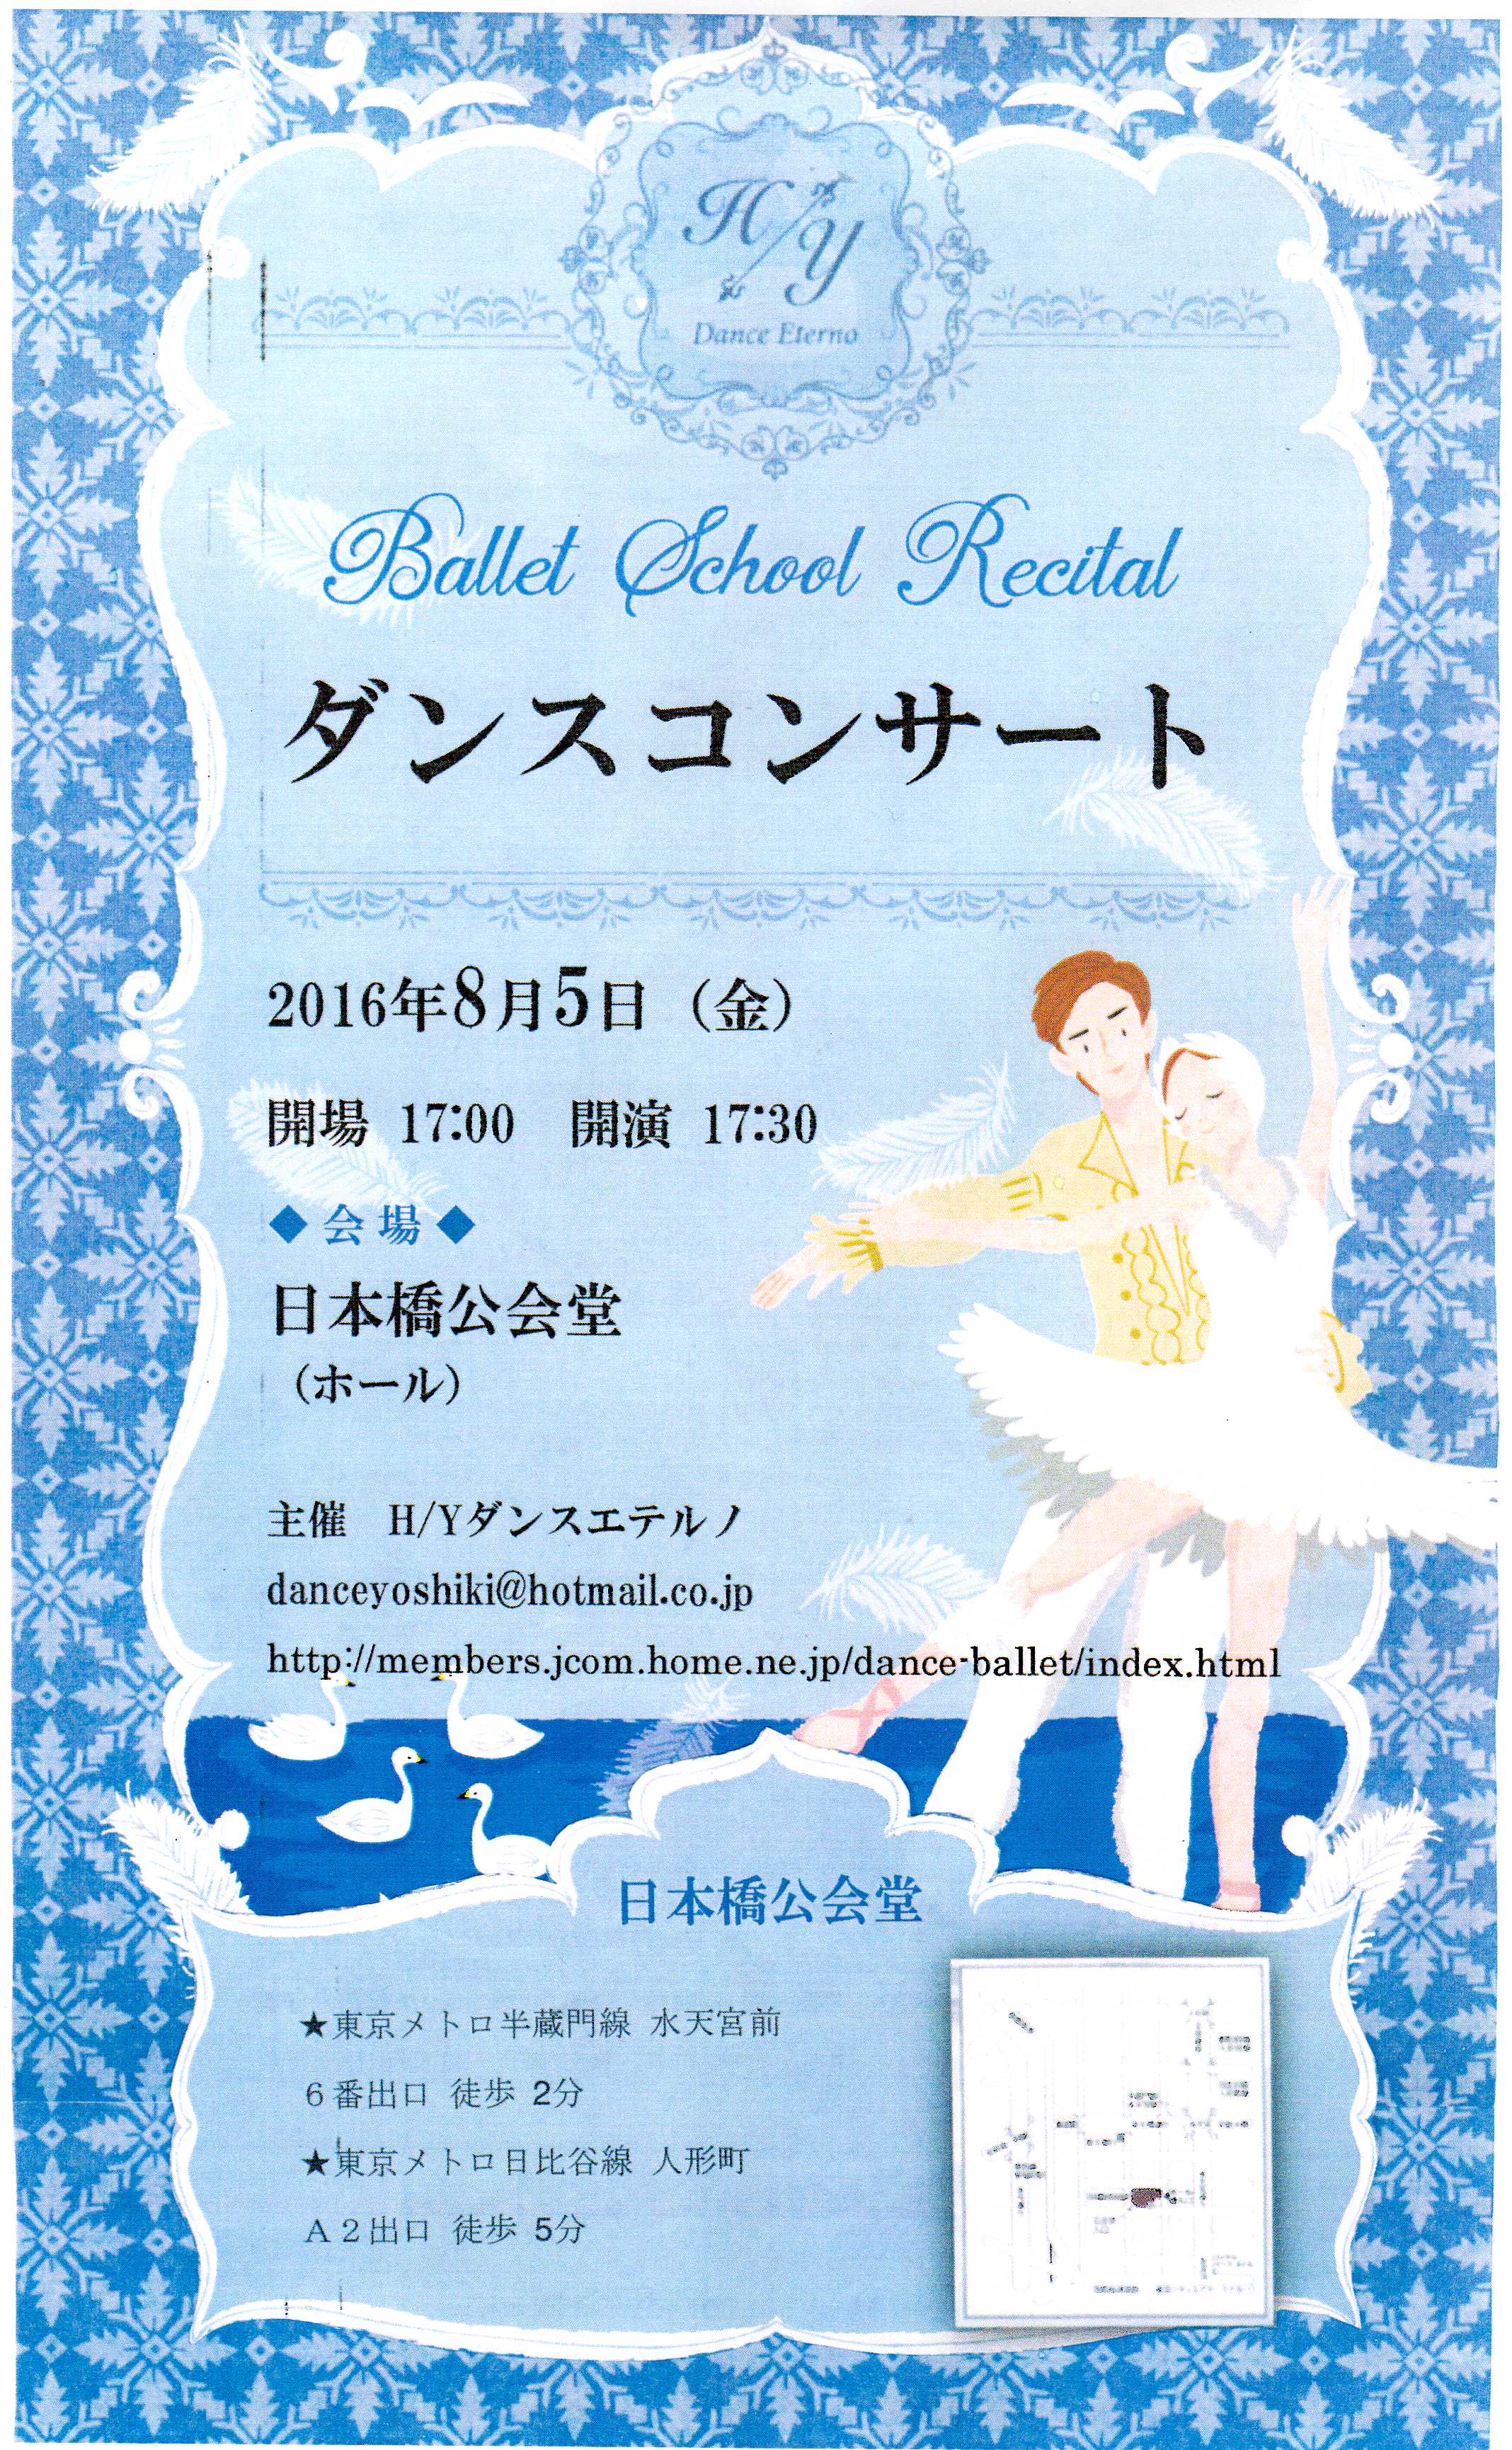 H/Y Dance Eterno　Ballet School Recital ダンスコンサート